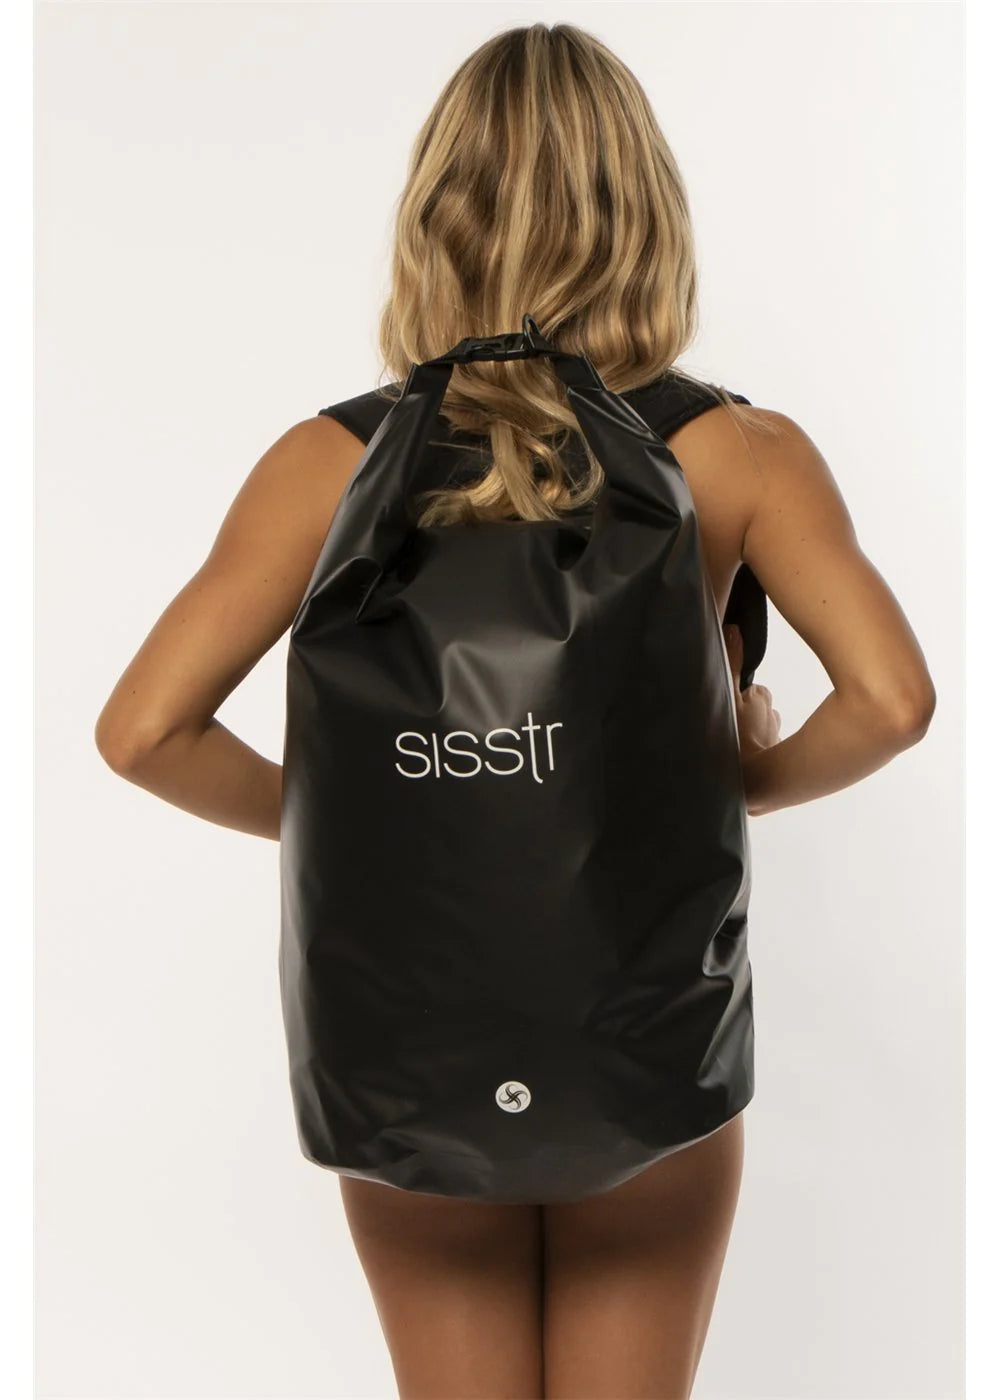 Sisstr Tide Wet/Dry Backpack